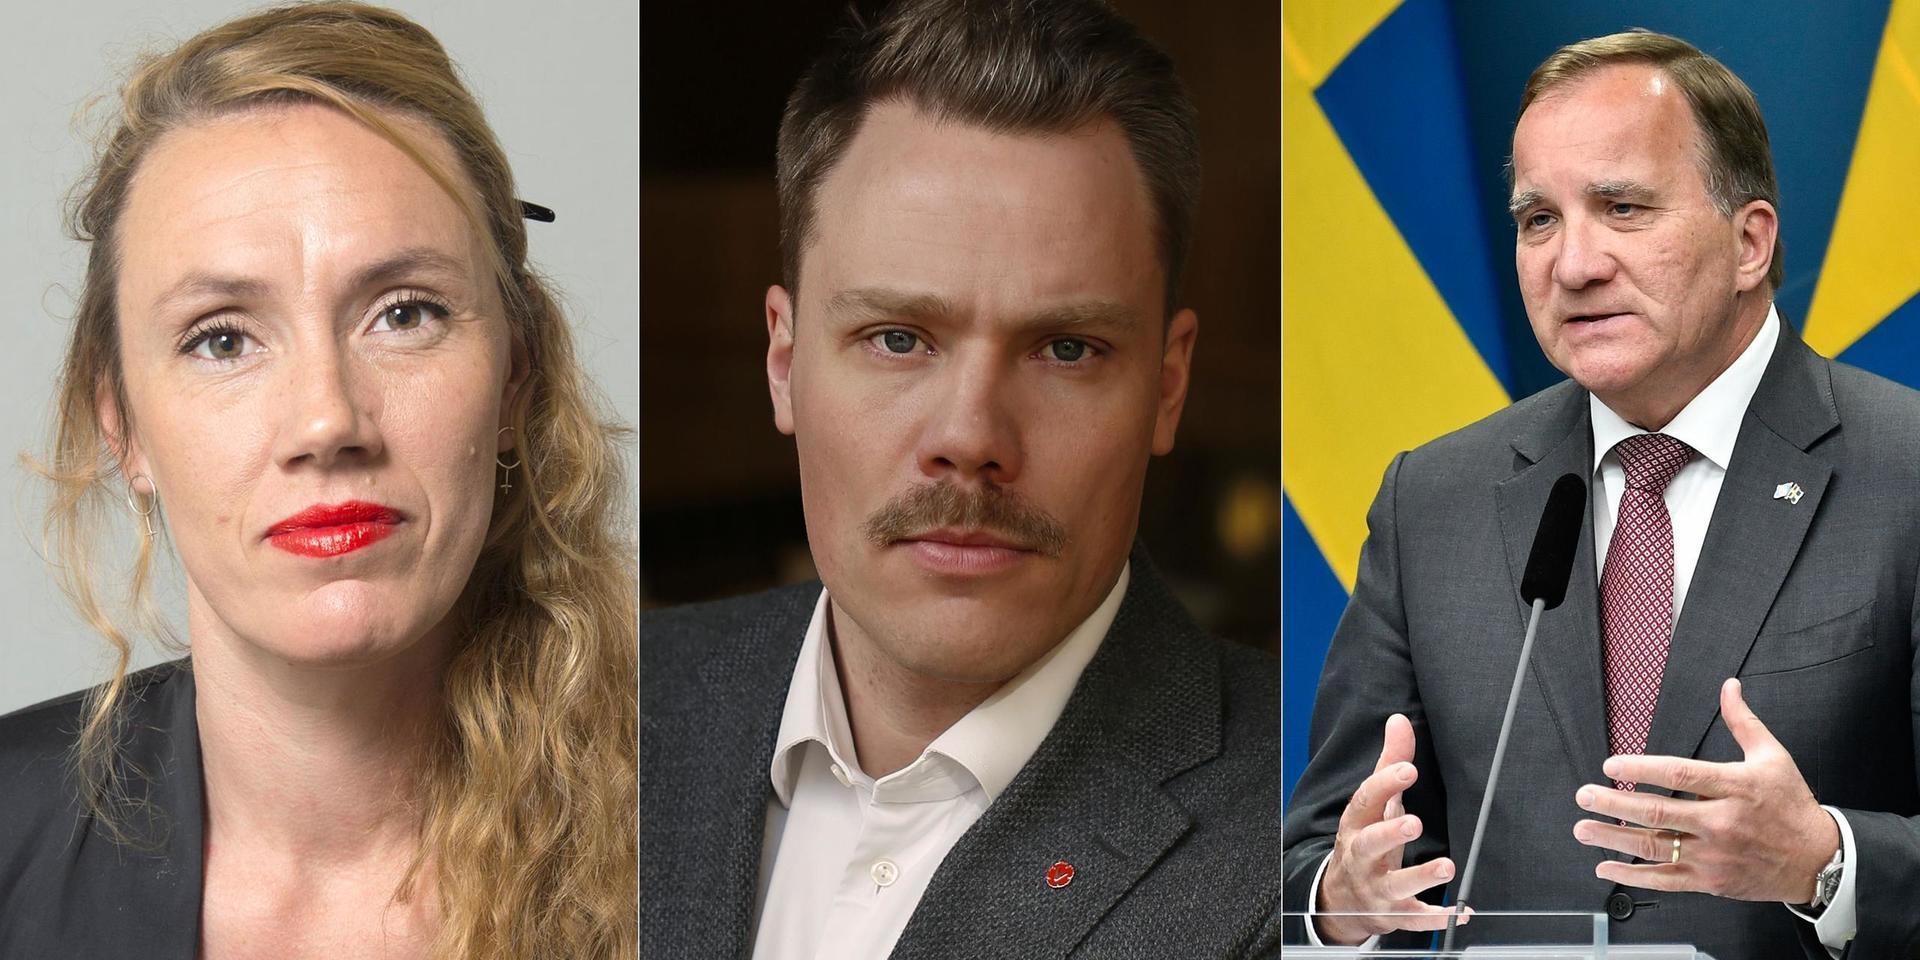 Att Vänsterpartiet nu saknar förtroende för Stefan Löfven har inte varit något lätt besked för oss att ge. Men någon måste stå upp för Sveriges hyresgäster och den breda folkliga opinionen mot marknadshyror, skriver debattörerna.